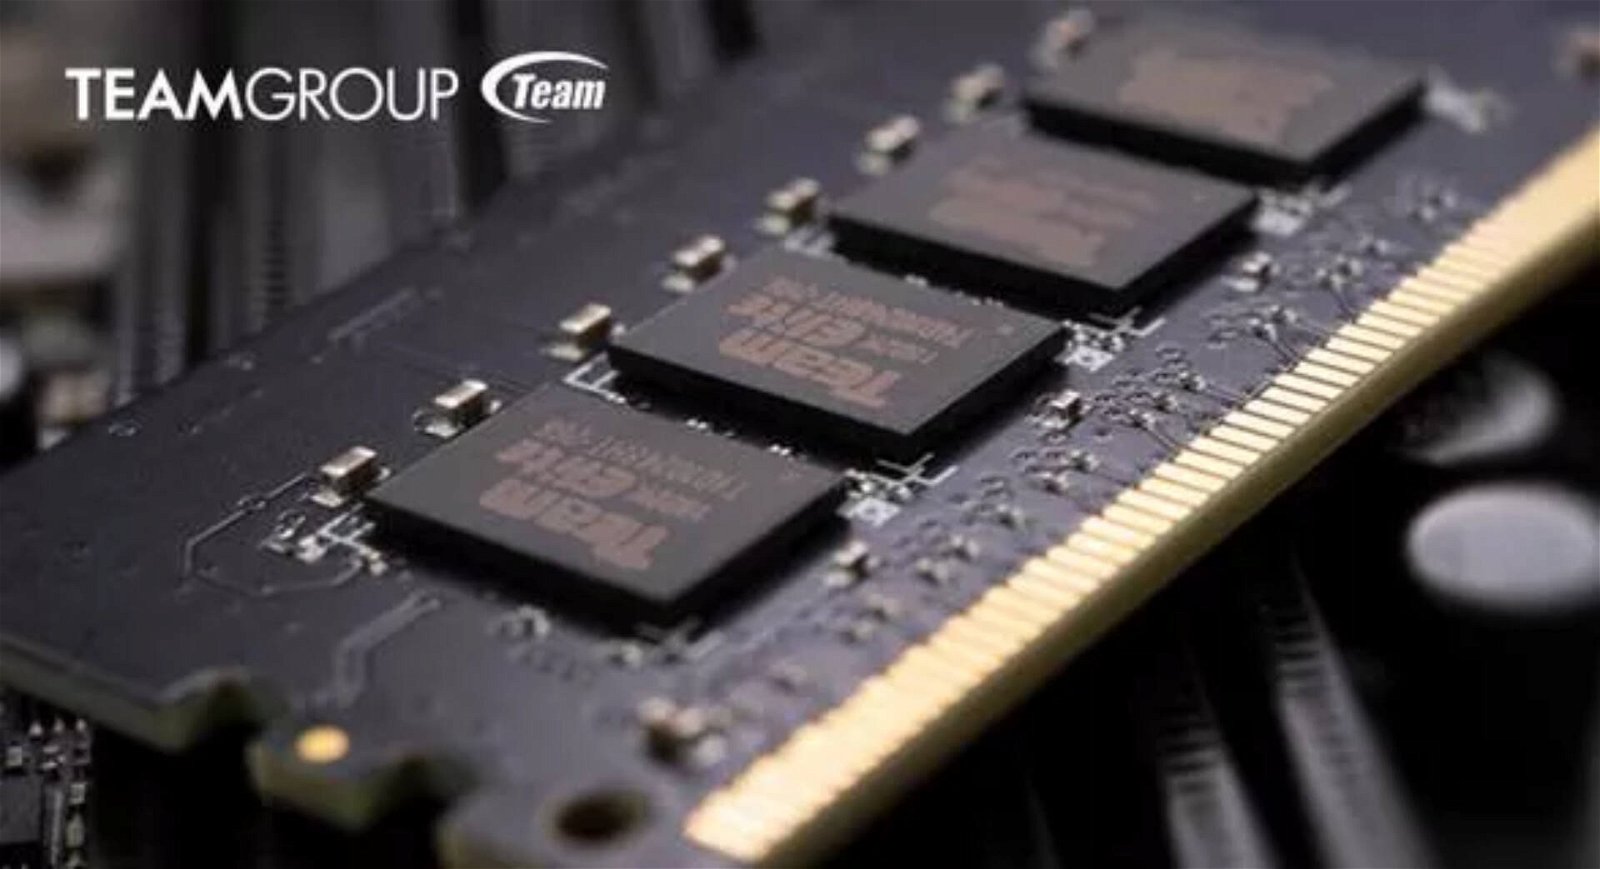 Immagine di TeamGroup: le memorie DDR5 sono già in fase di testing, in arrivo nel 2021